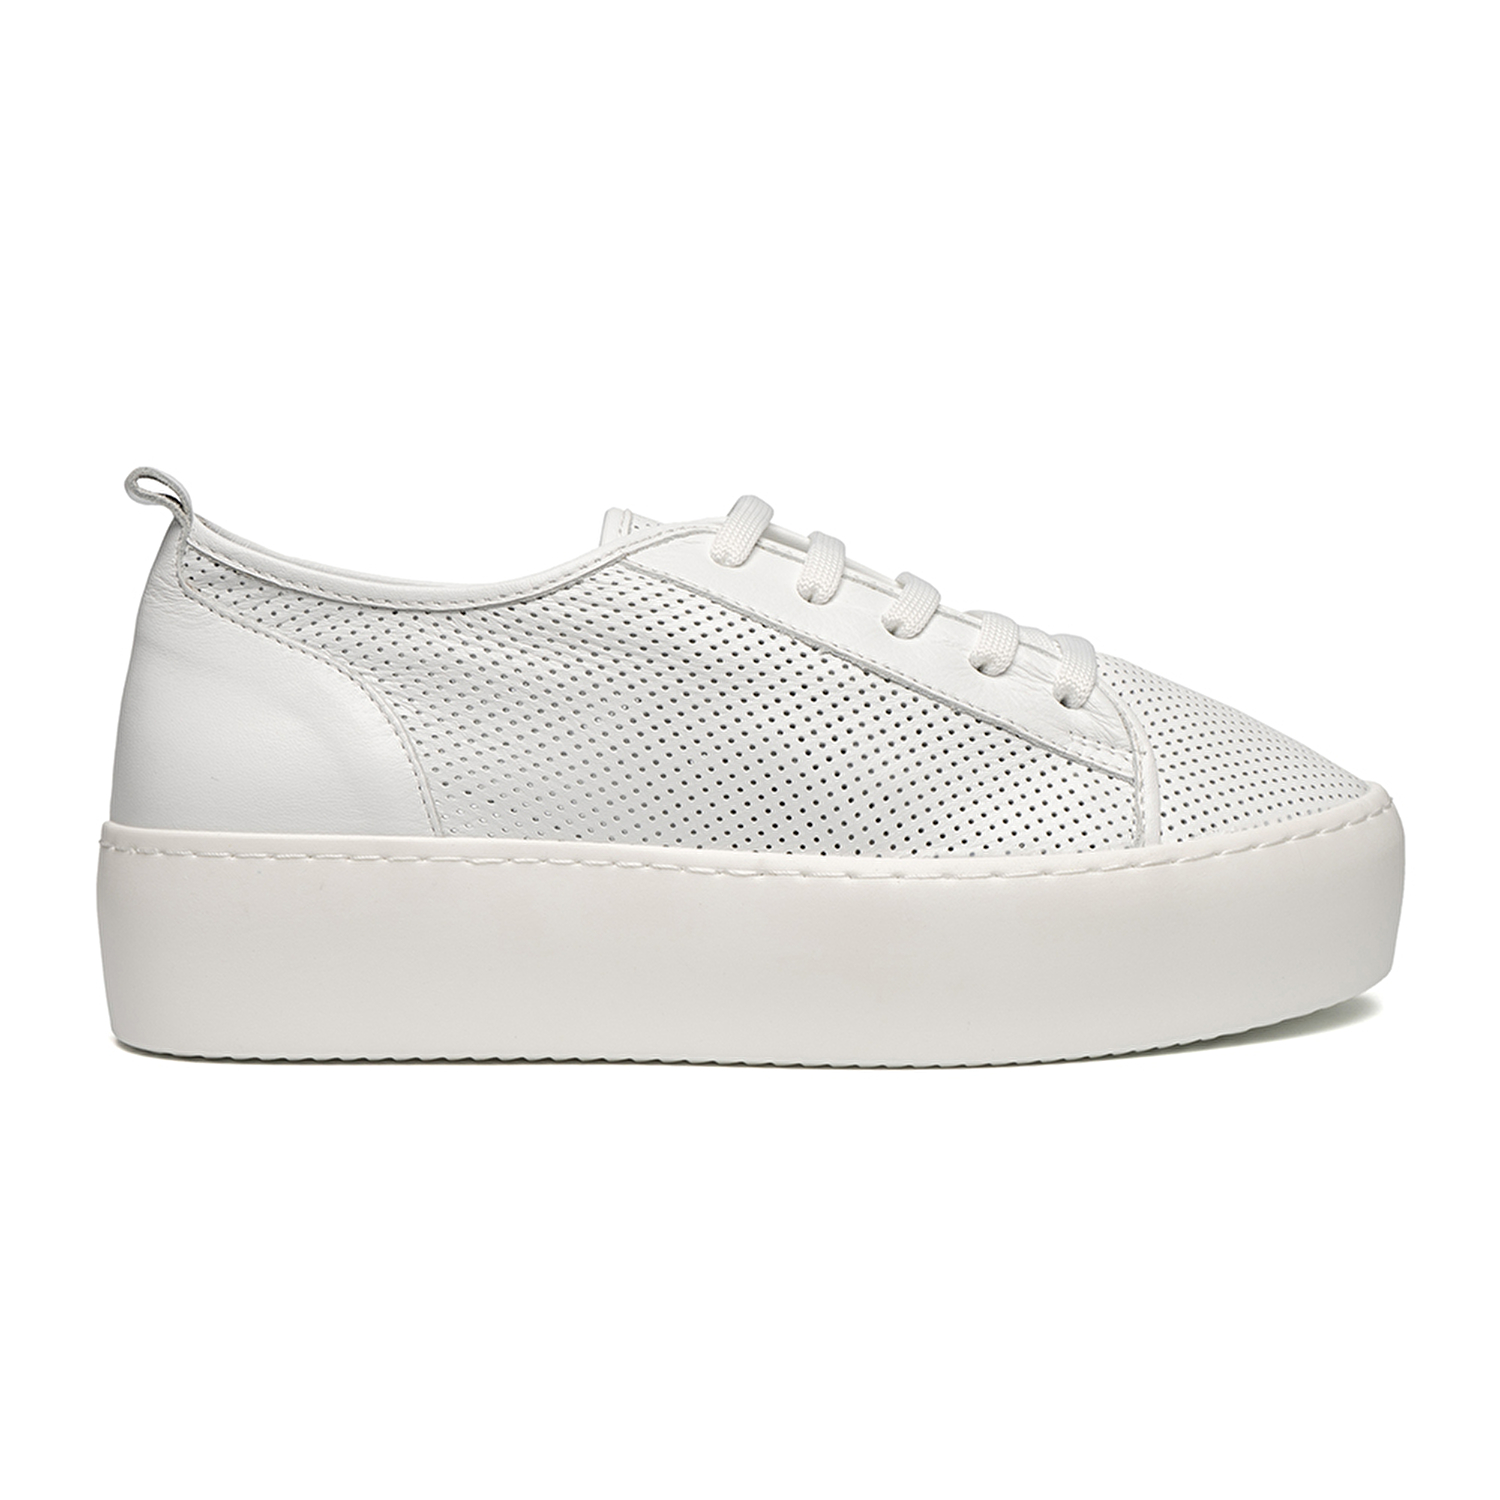 Kadın Beyaz Hakiki Deri Sneaker Ayakkabı 2Y2SA57942-1